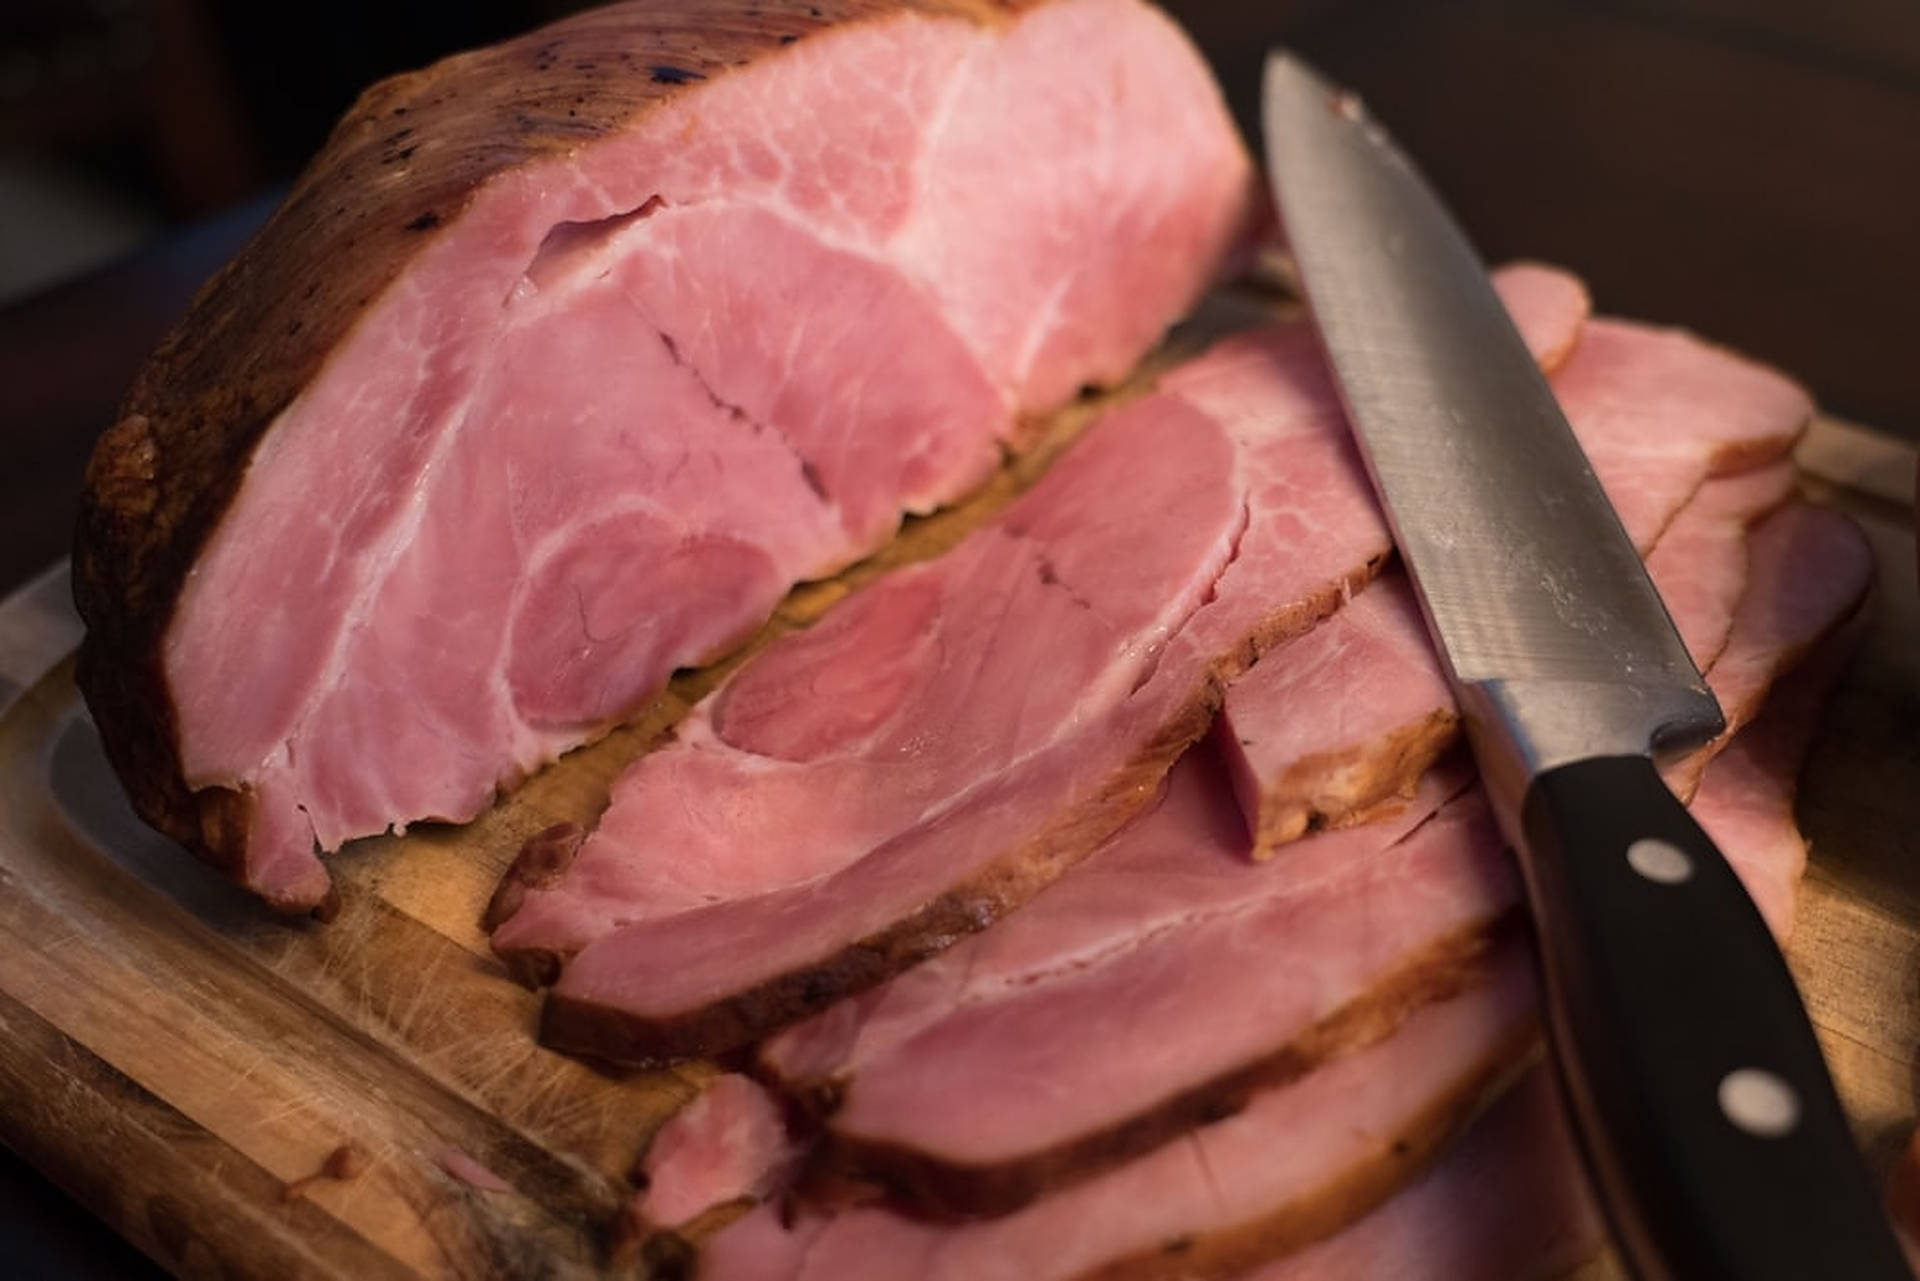 Caption: Delicious Medium Cooked Ham